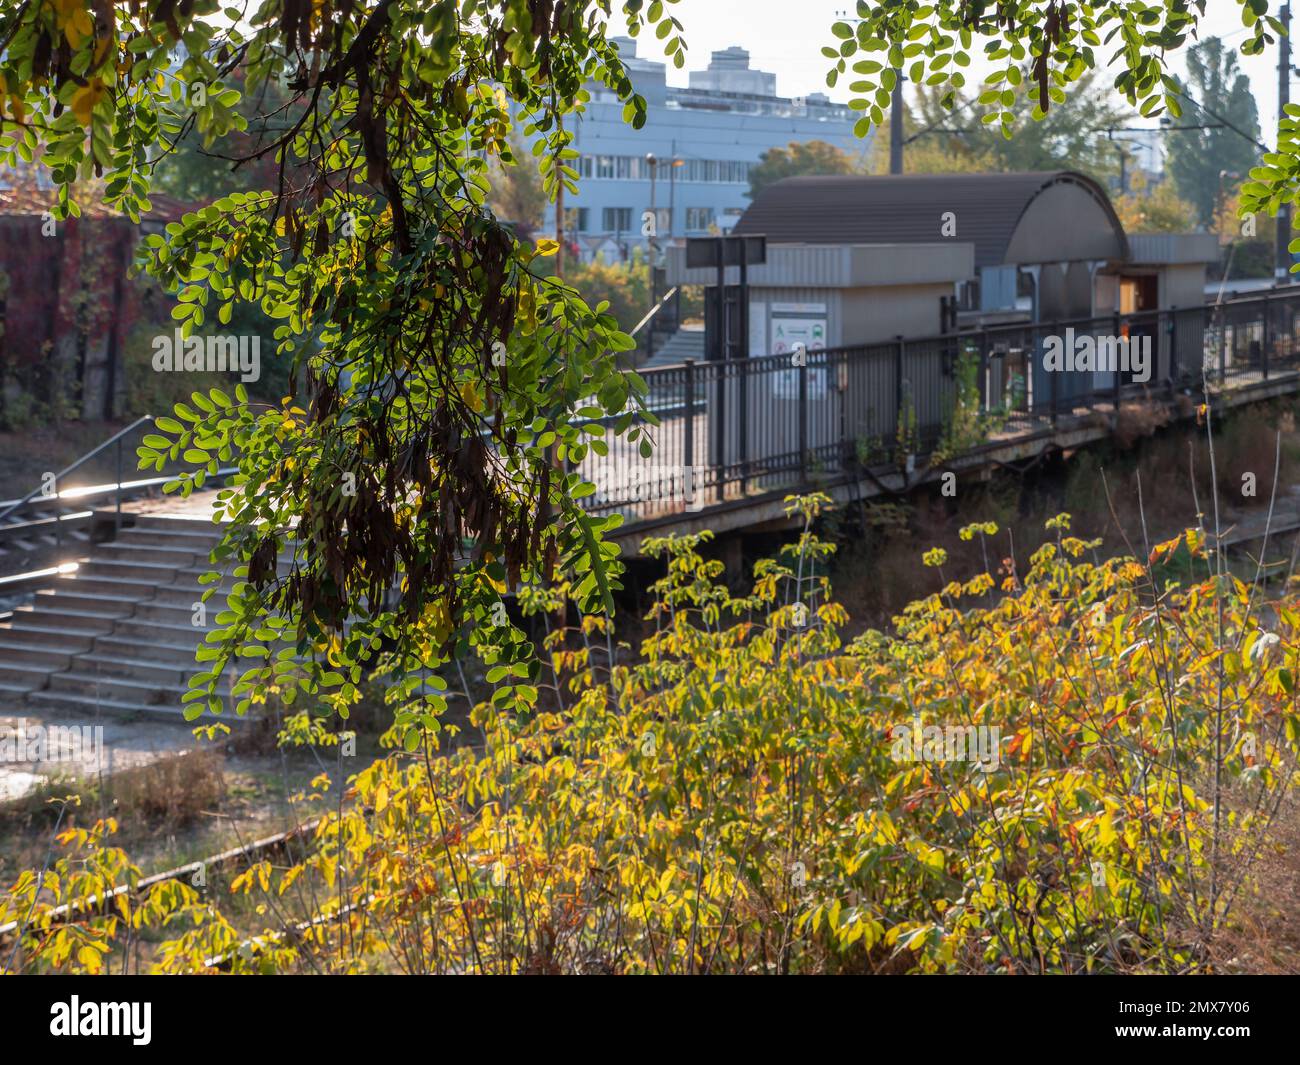 Verschwommener S-Bahnhof mit Betonplattform, Metallschuppen und einem Ast Akazienbaum im Vordergrund. Farbenfroher Herbstmorgen. Stockfoto